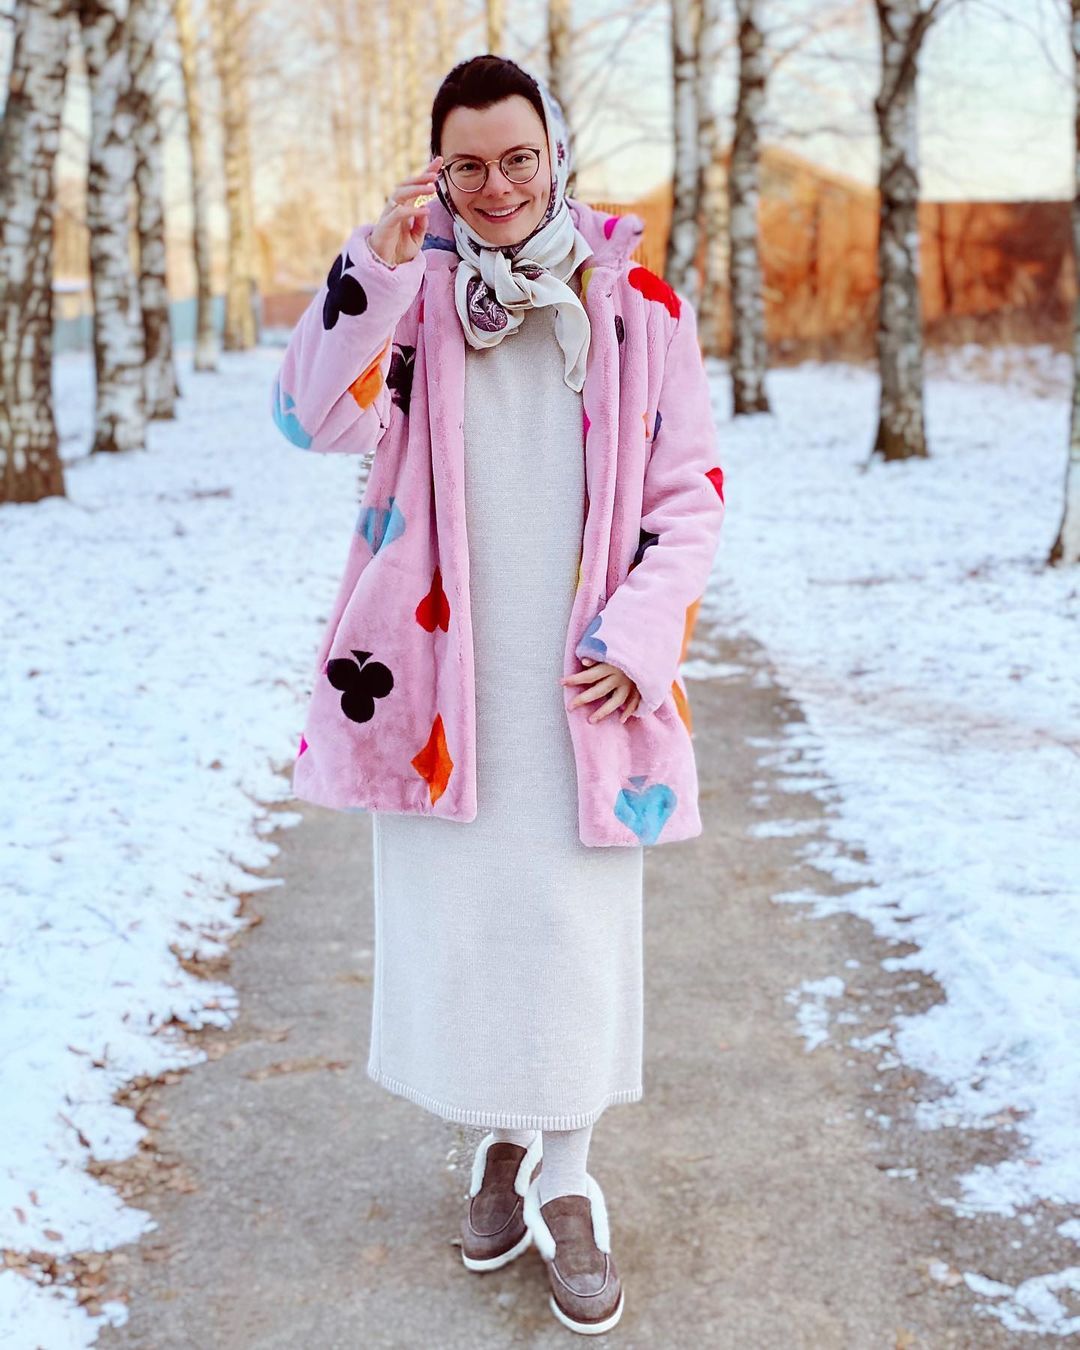 Мода имени Татьяны Брухуновой или как в 32 выглядеть старухой, имея миллионы